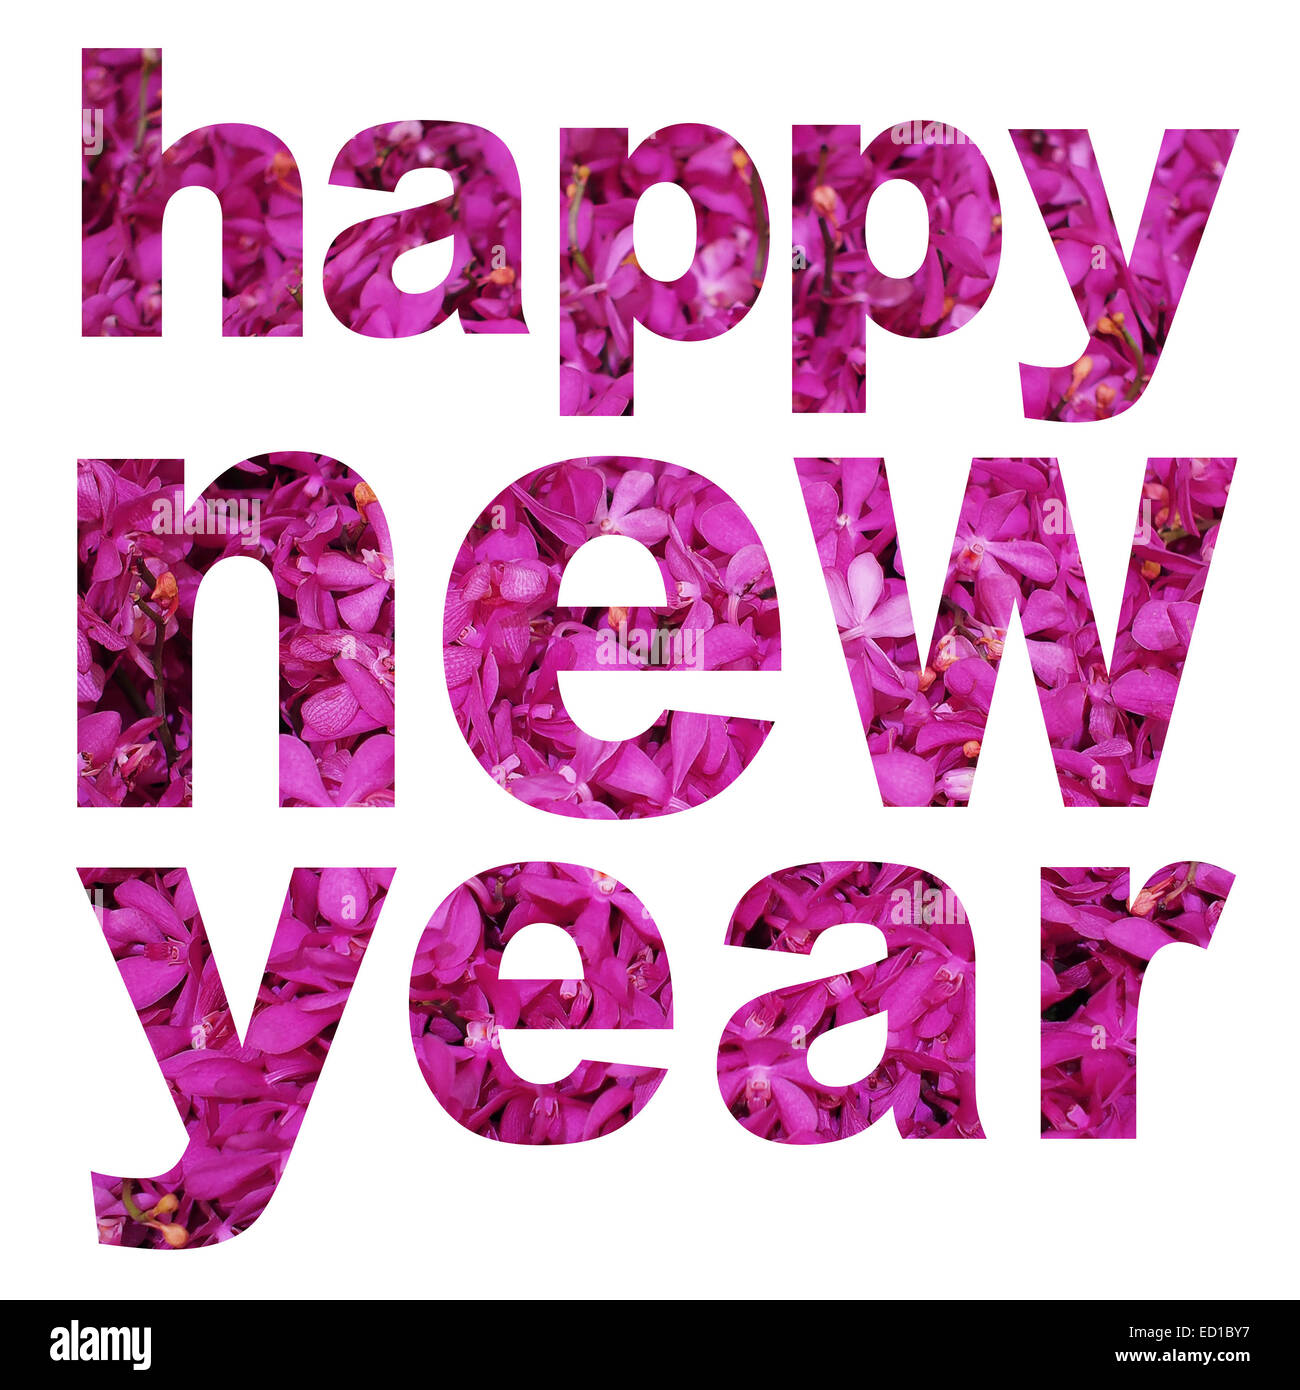 Prosit Neujahr Wort hergestellt aus Orchidee Blumenbild auf weißem Hintergrund Stockfoto